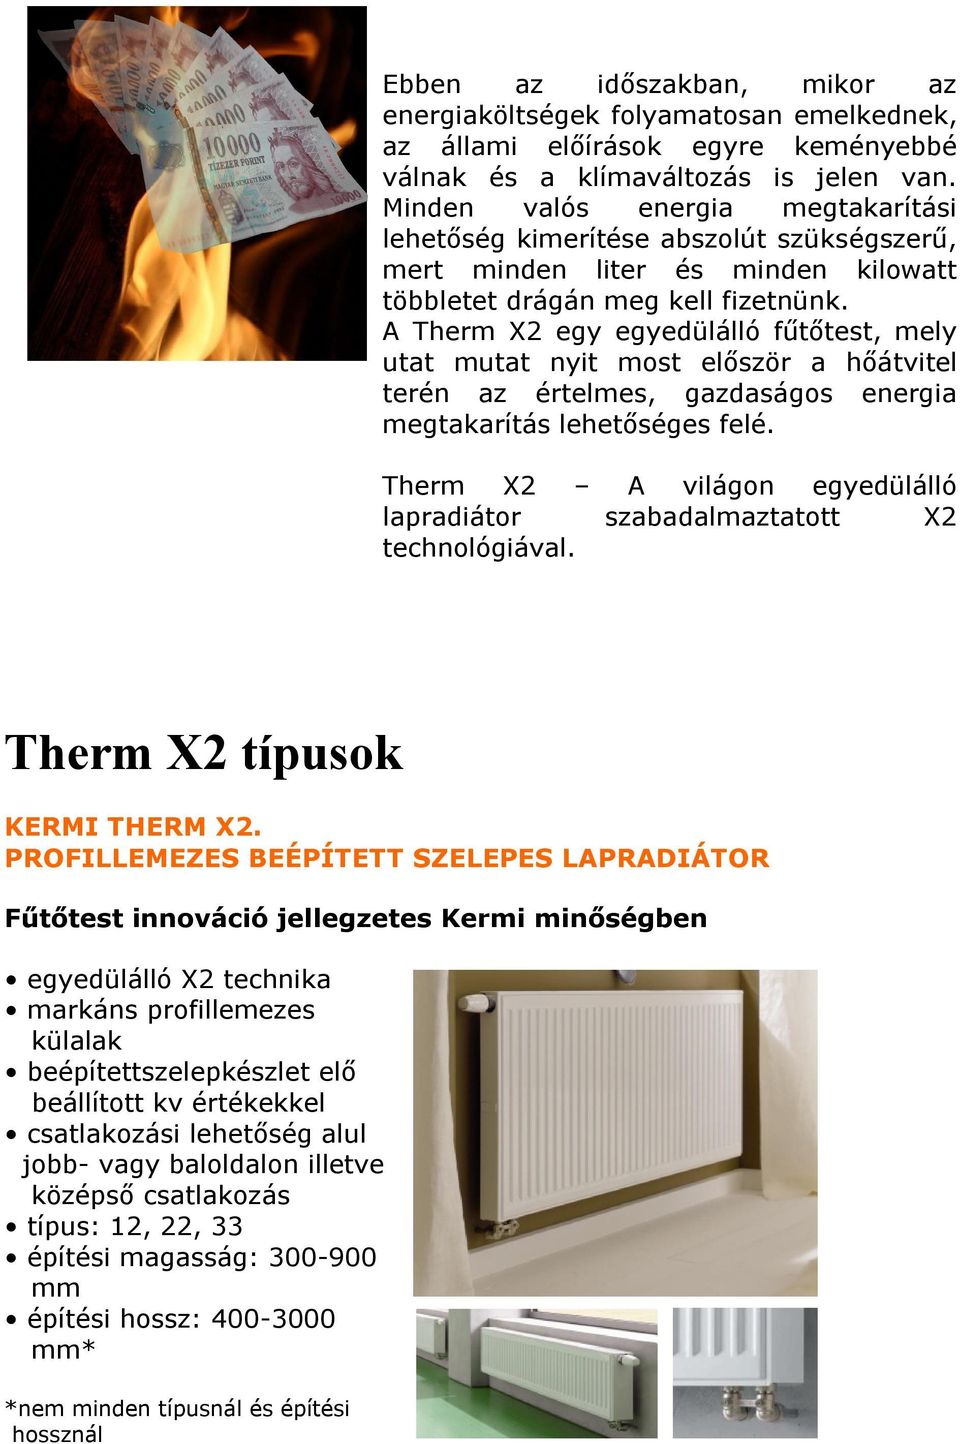 A Therm X2 egy egyedülálló fűtőtest, mely utat mutat nyit most először a hőátvitel terén az értelmes, gazdaságos energia megtakarítás lehetőséges felé.